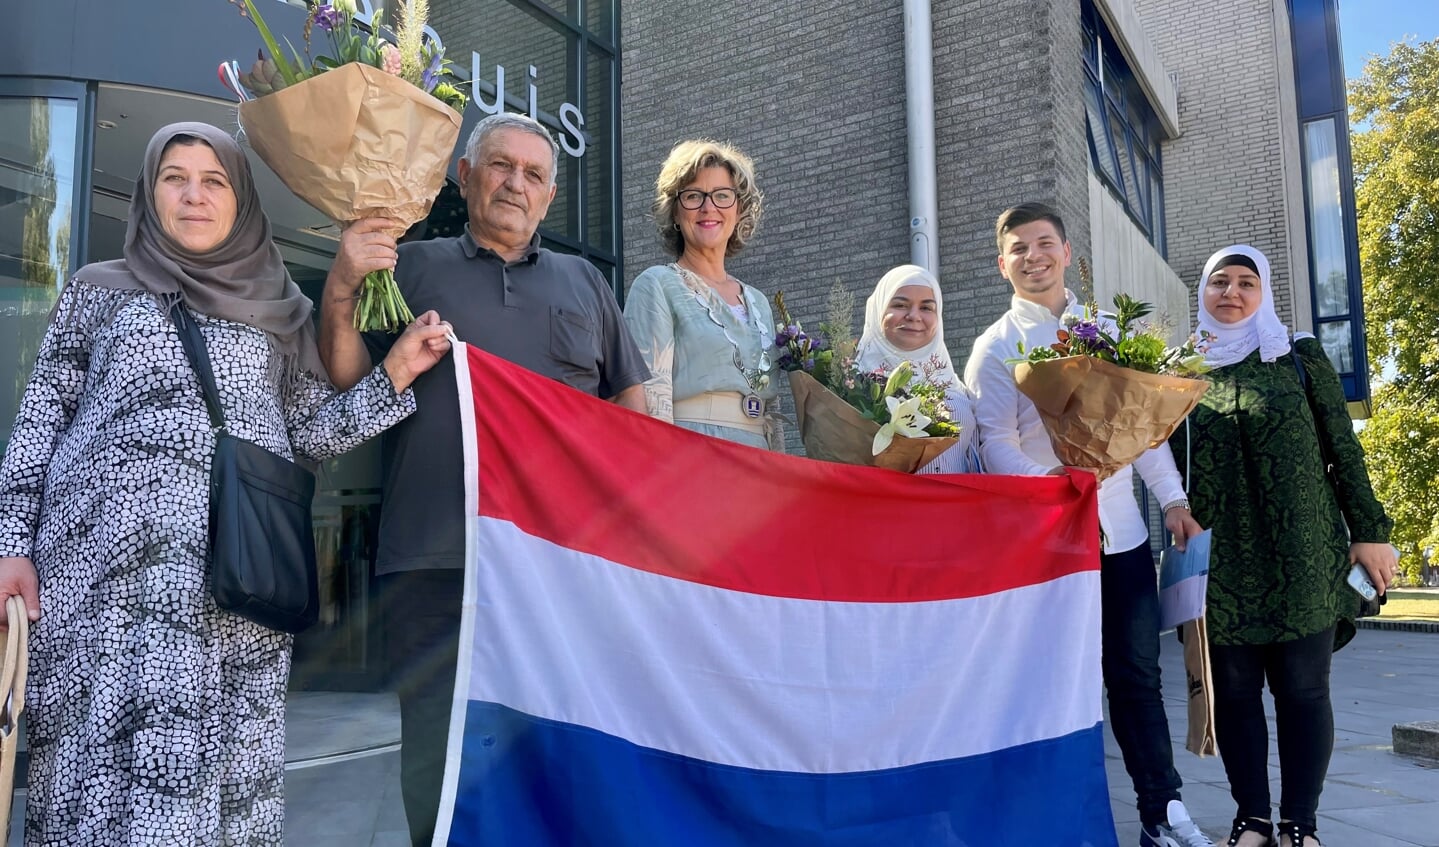 De 3 nieuwe Nederlanders zijn afkomstig uit Syrië.